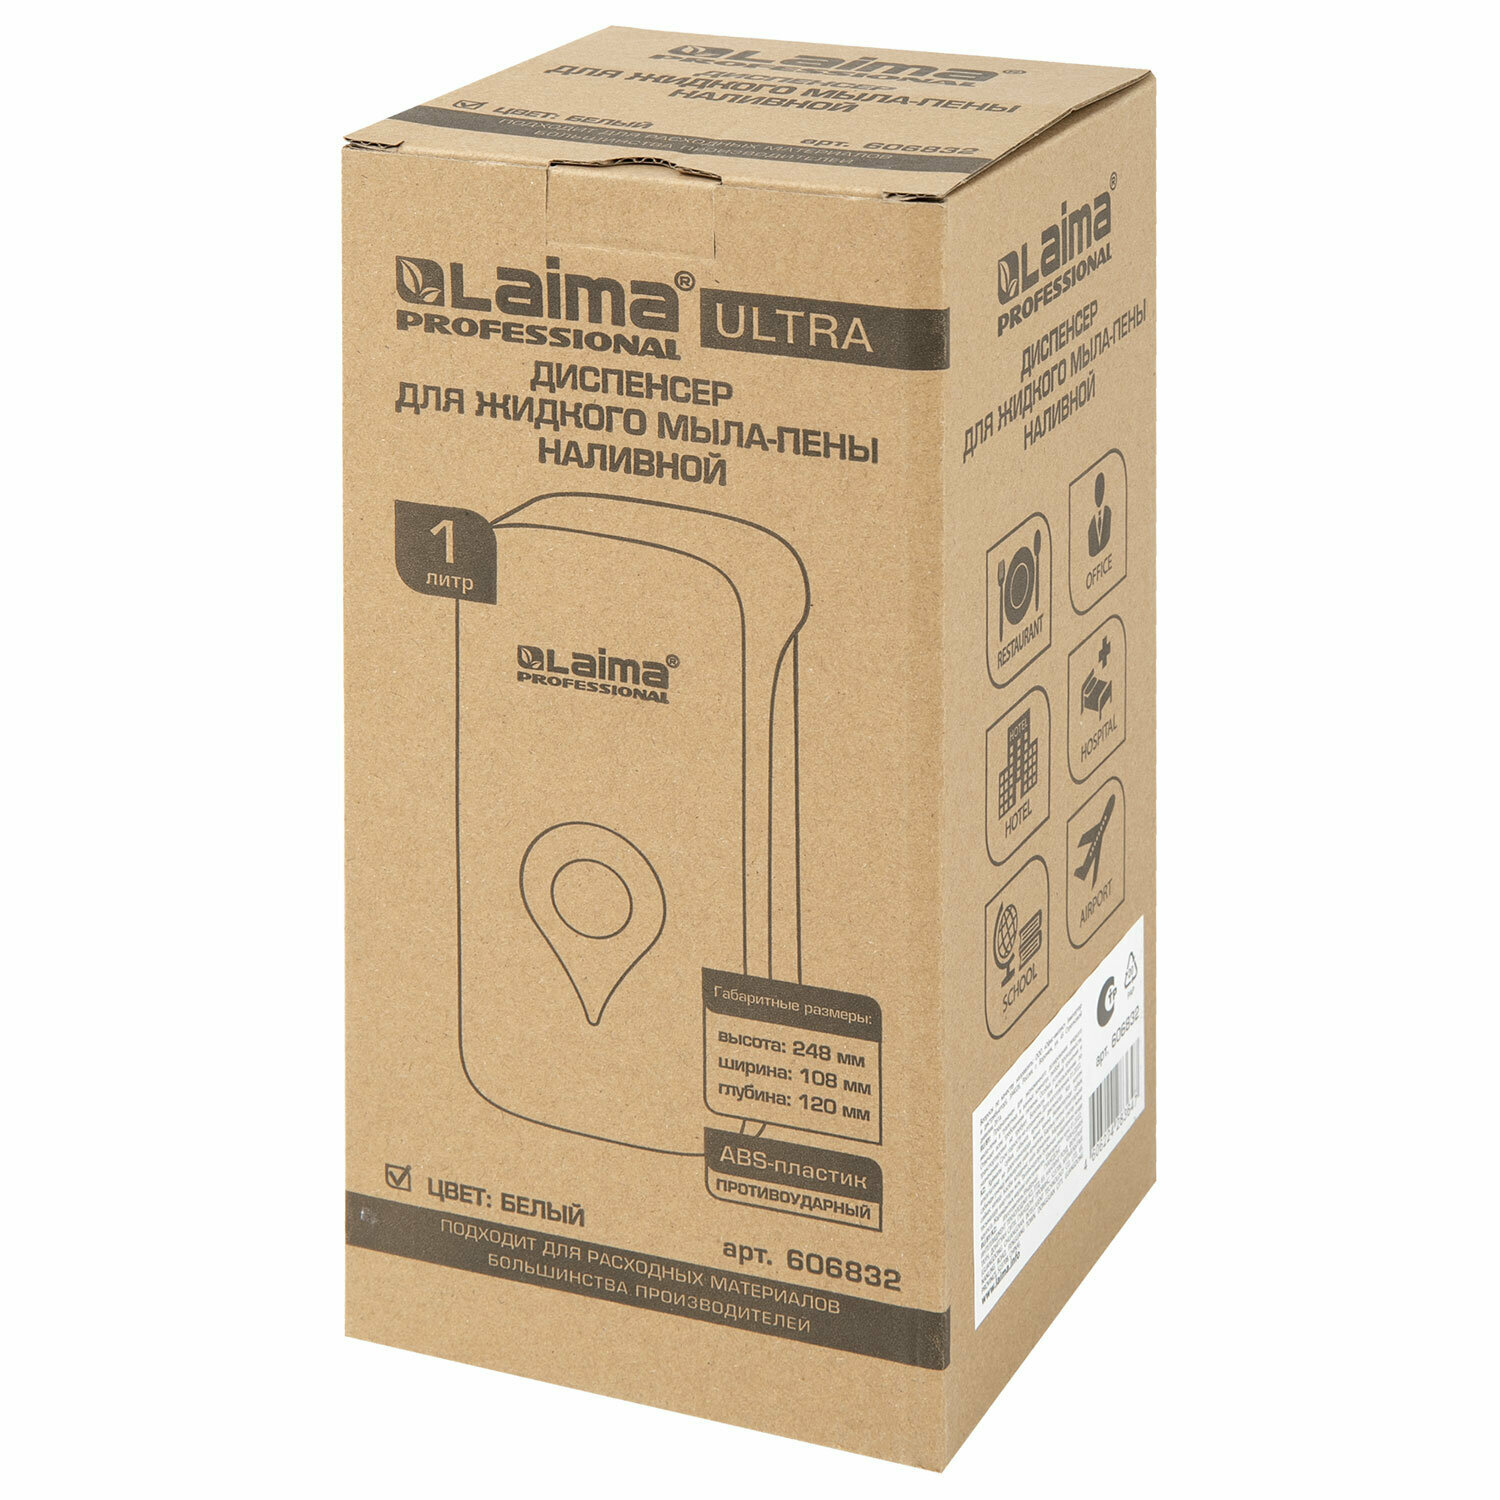 Дозатор для мыла-пены ULTRA LAIMA PROFESSIONAL, наливной, 1 л, белый, ABS-пластик, 606832 - фотография № 16